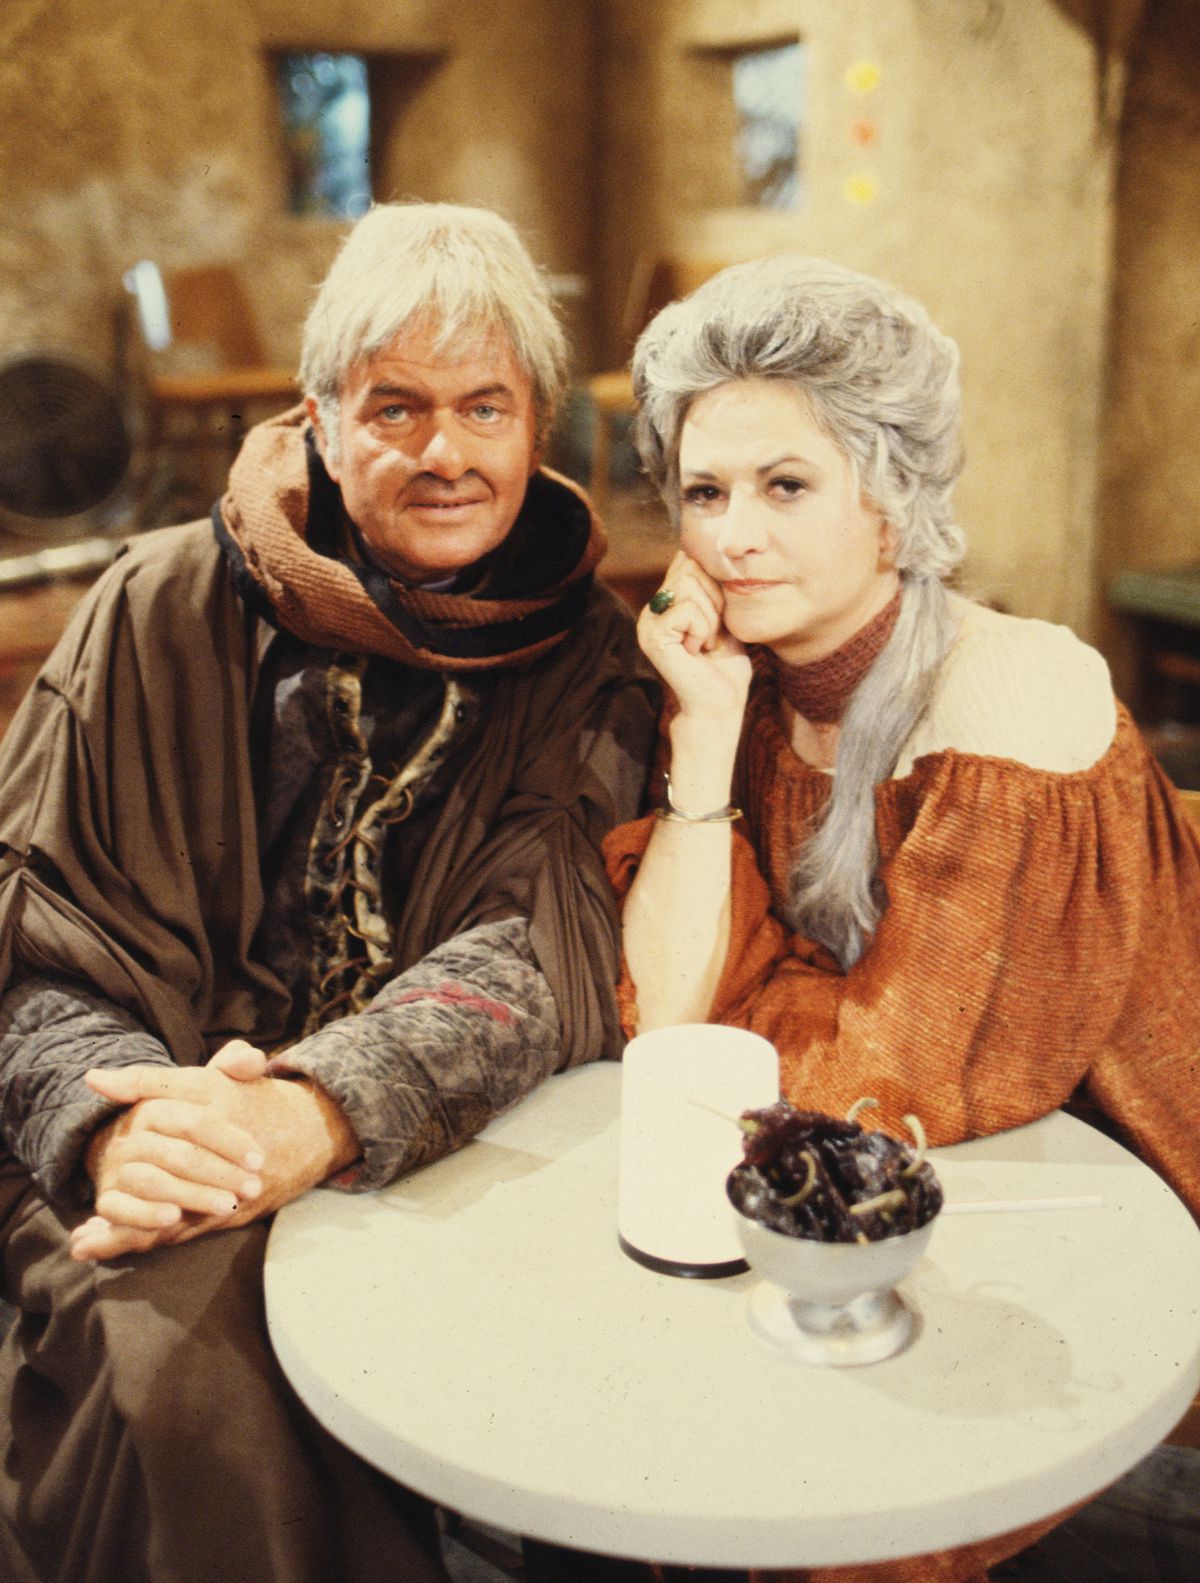 Art Carney et Bea Arthur sont assis ensemble dans leurs costumes Star Wars, regardant la caméra, dans une photo publicitaire posée pour l'émission The Star Wars Holiday Special de 1978